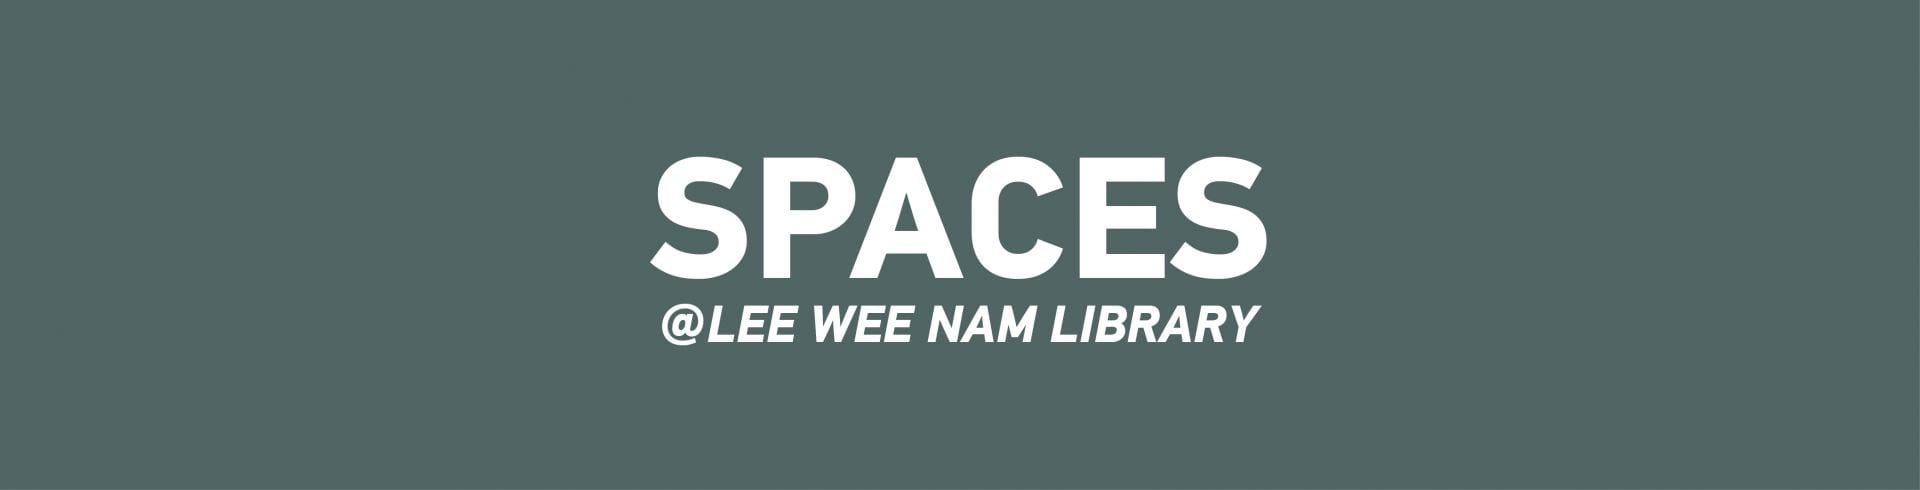 Lee Wee Nam Library Spaces